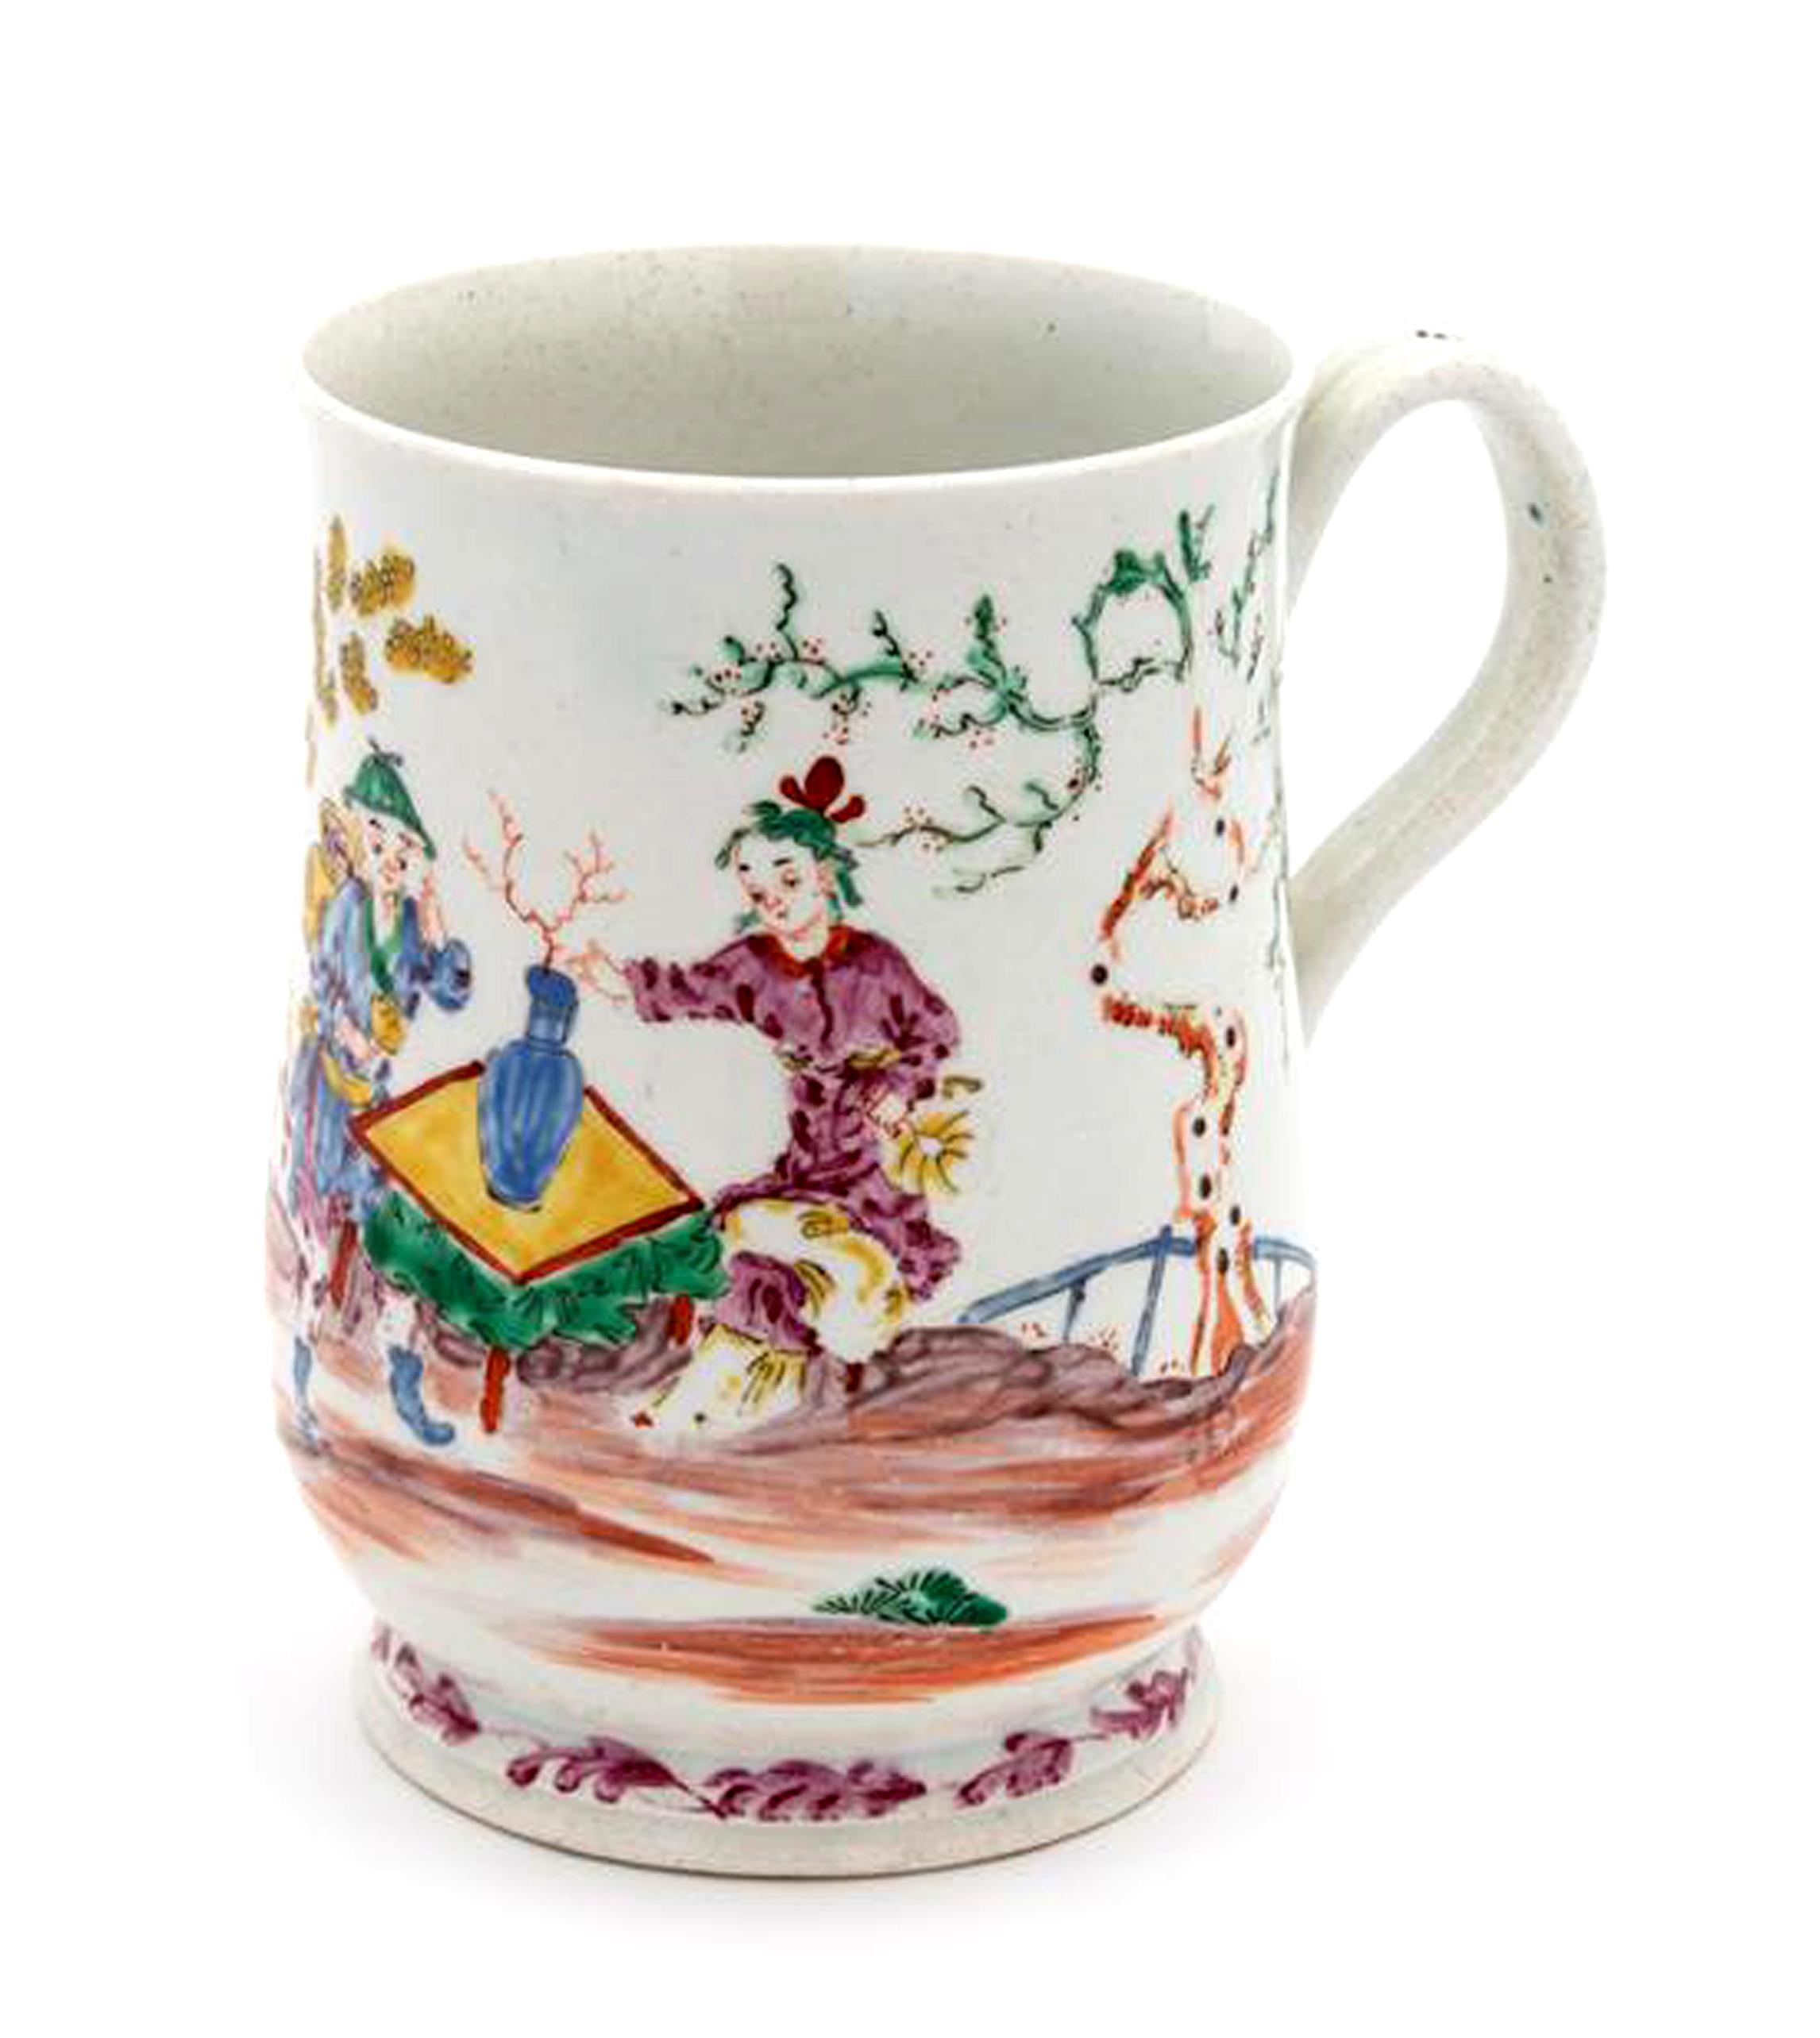 Cruche en porcelaine de Chinoiserie,
Bow, Londres,
1760-1765.

Cette chope en porcelaine polychrome inhabituellement peinte représente des personnages de la Chinoiserie assis autour d'une table basse avec un vase en porcelaine avec des fleurs au